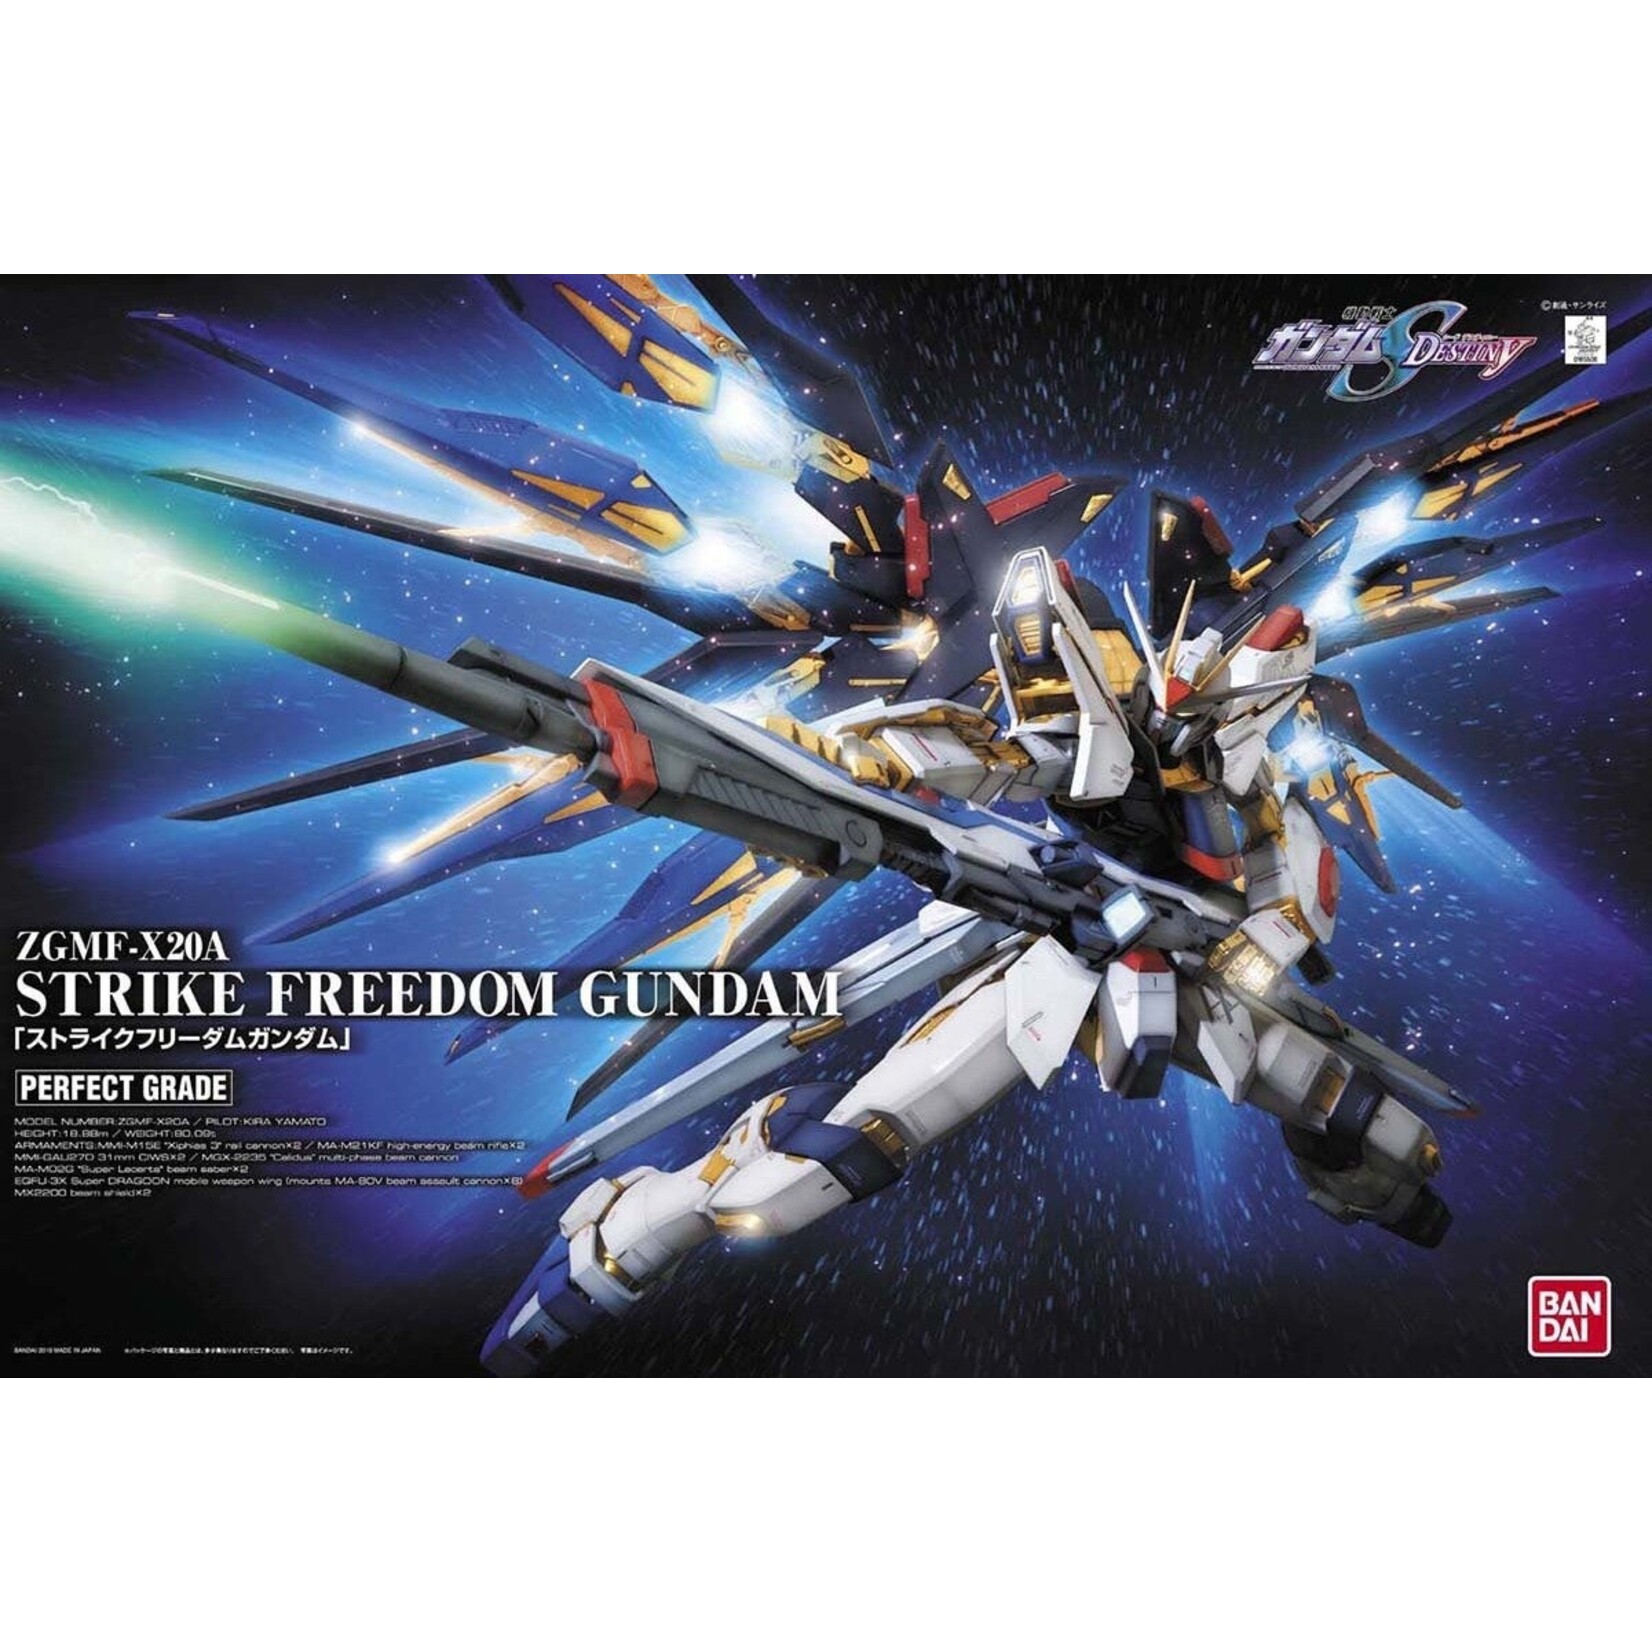 Bandai Bandai PG 1/60 Strike Freedom Gundam